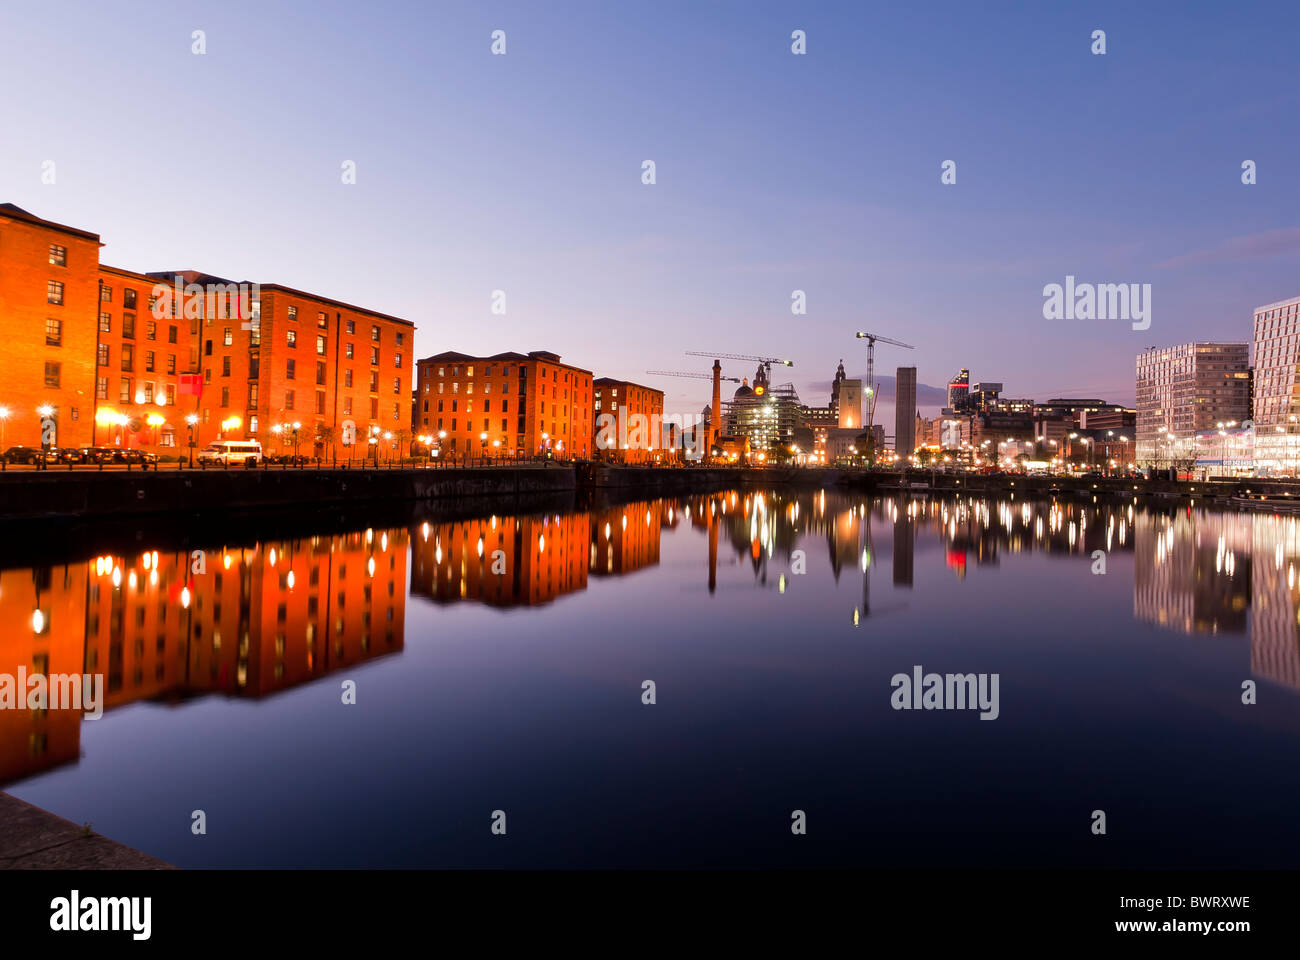 Magazzini riflessa nell'acqua di Albert Dock, Liverpool, in Inghilterra, Regno Unito Foto Stock